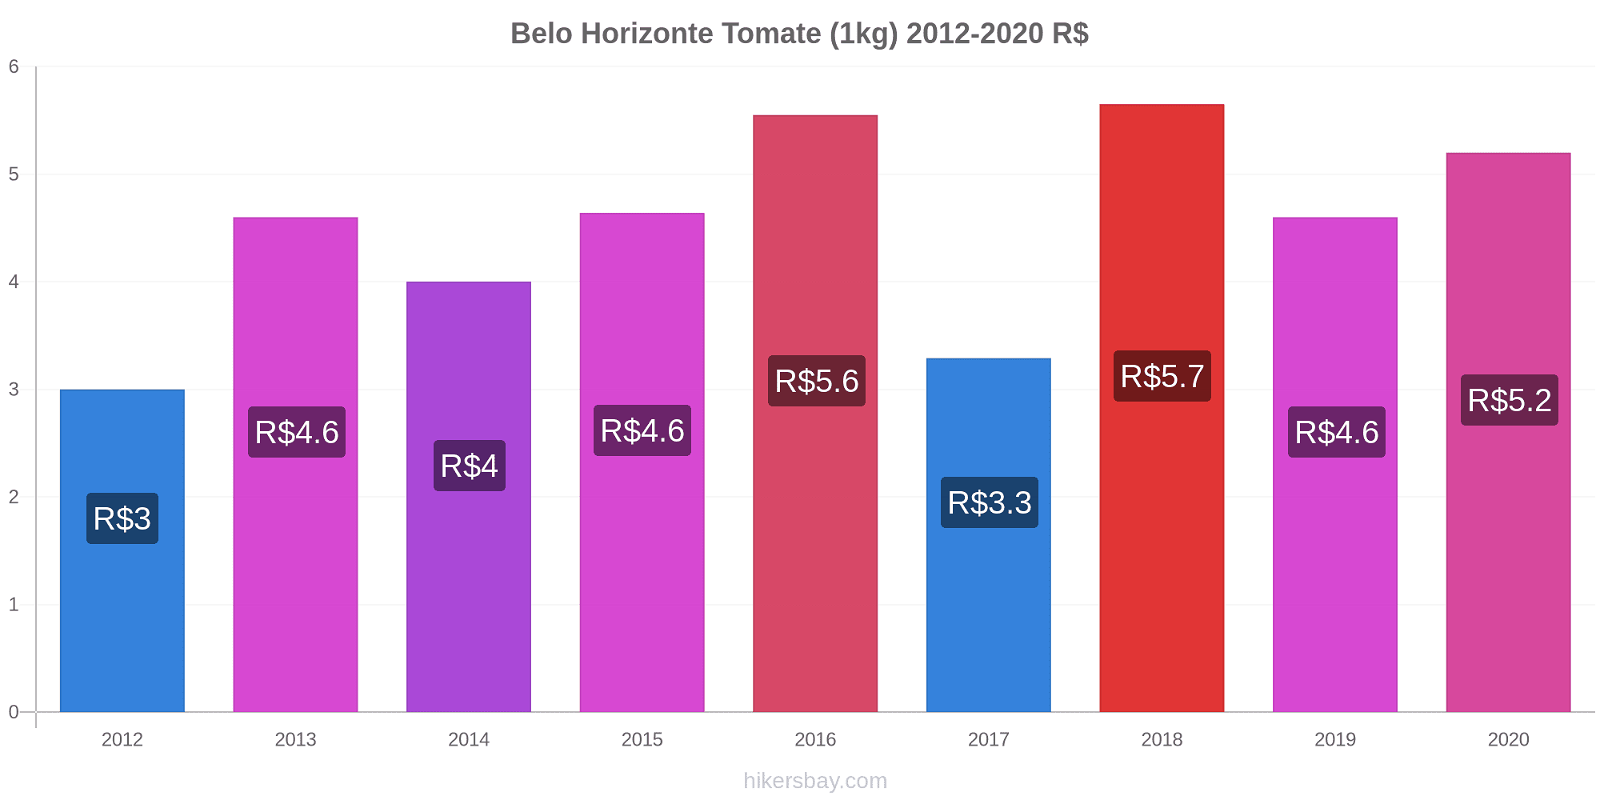 Belo Horizonte changements de prix Tomate (1kg) hikersbay.com